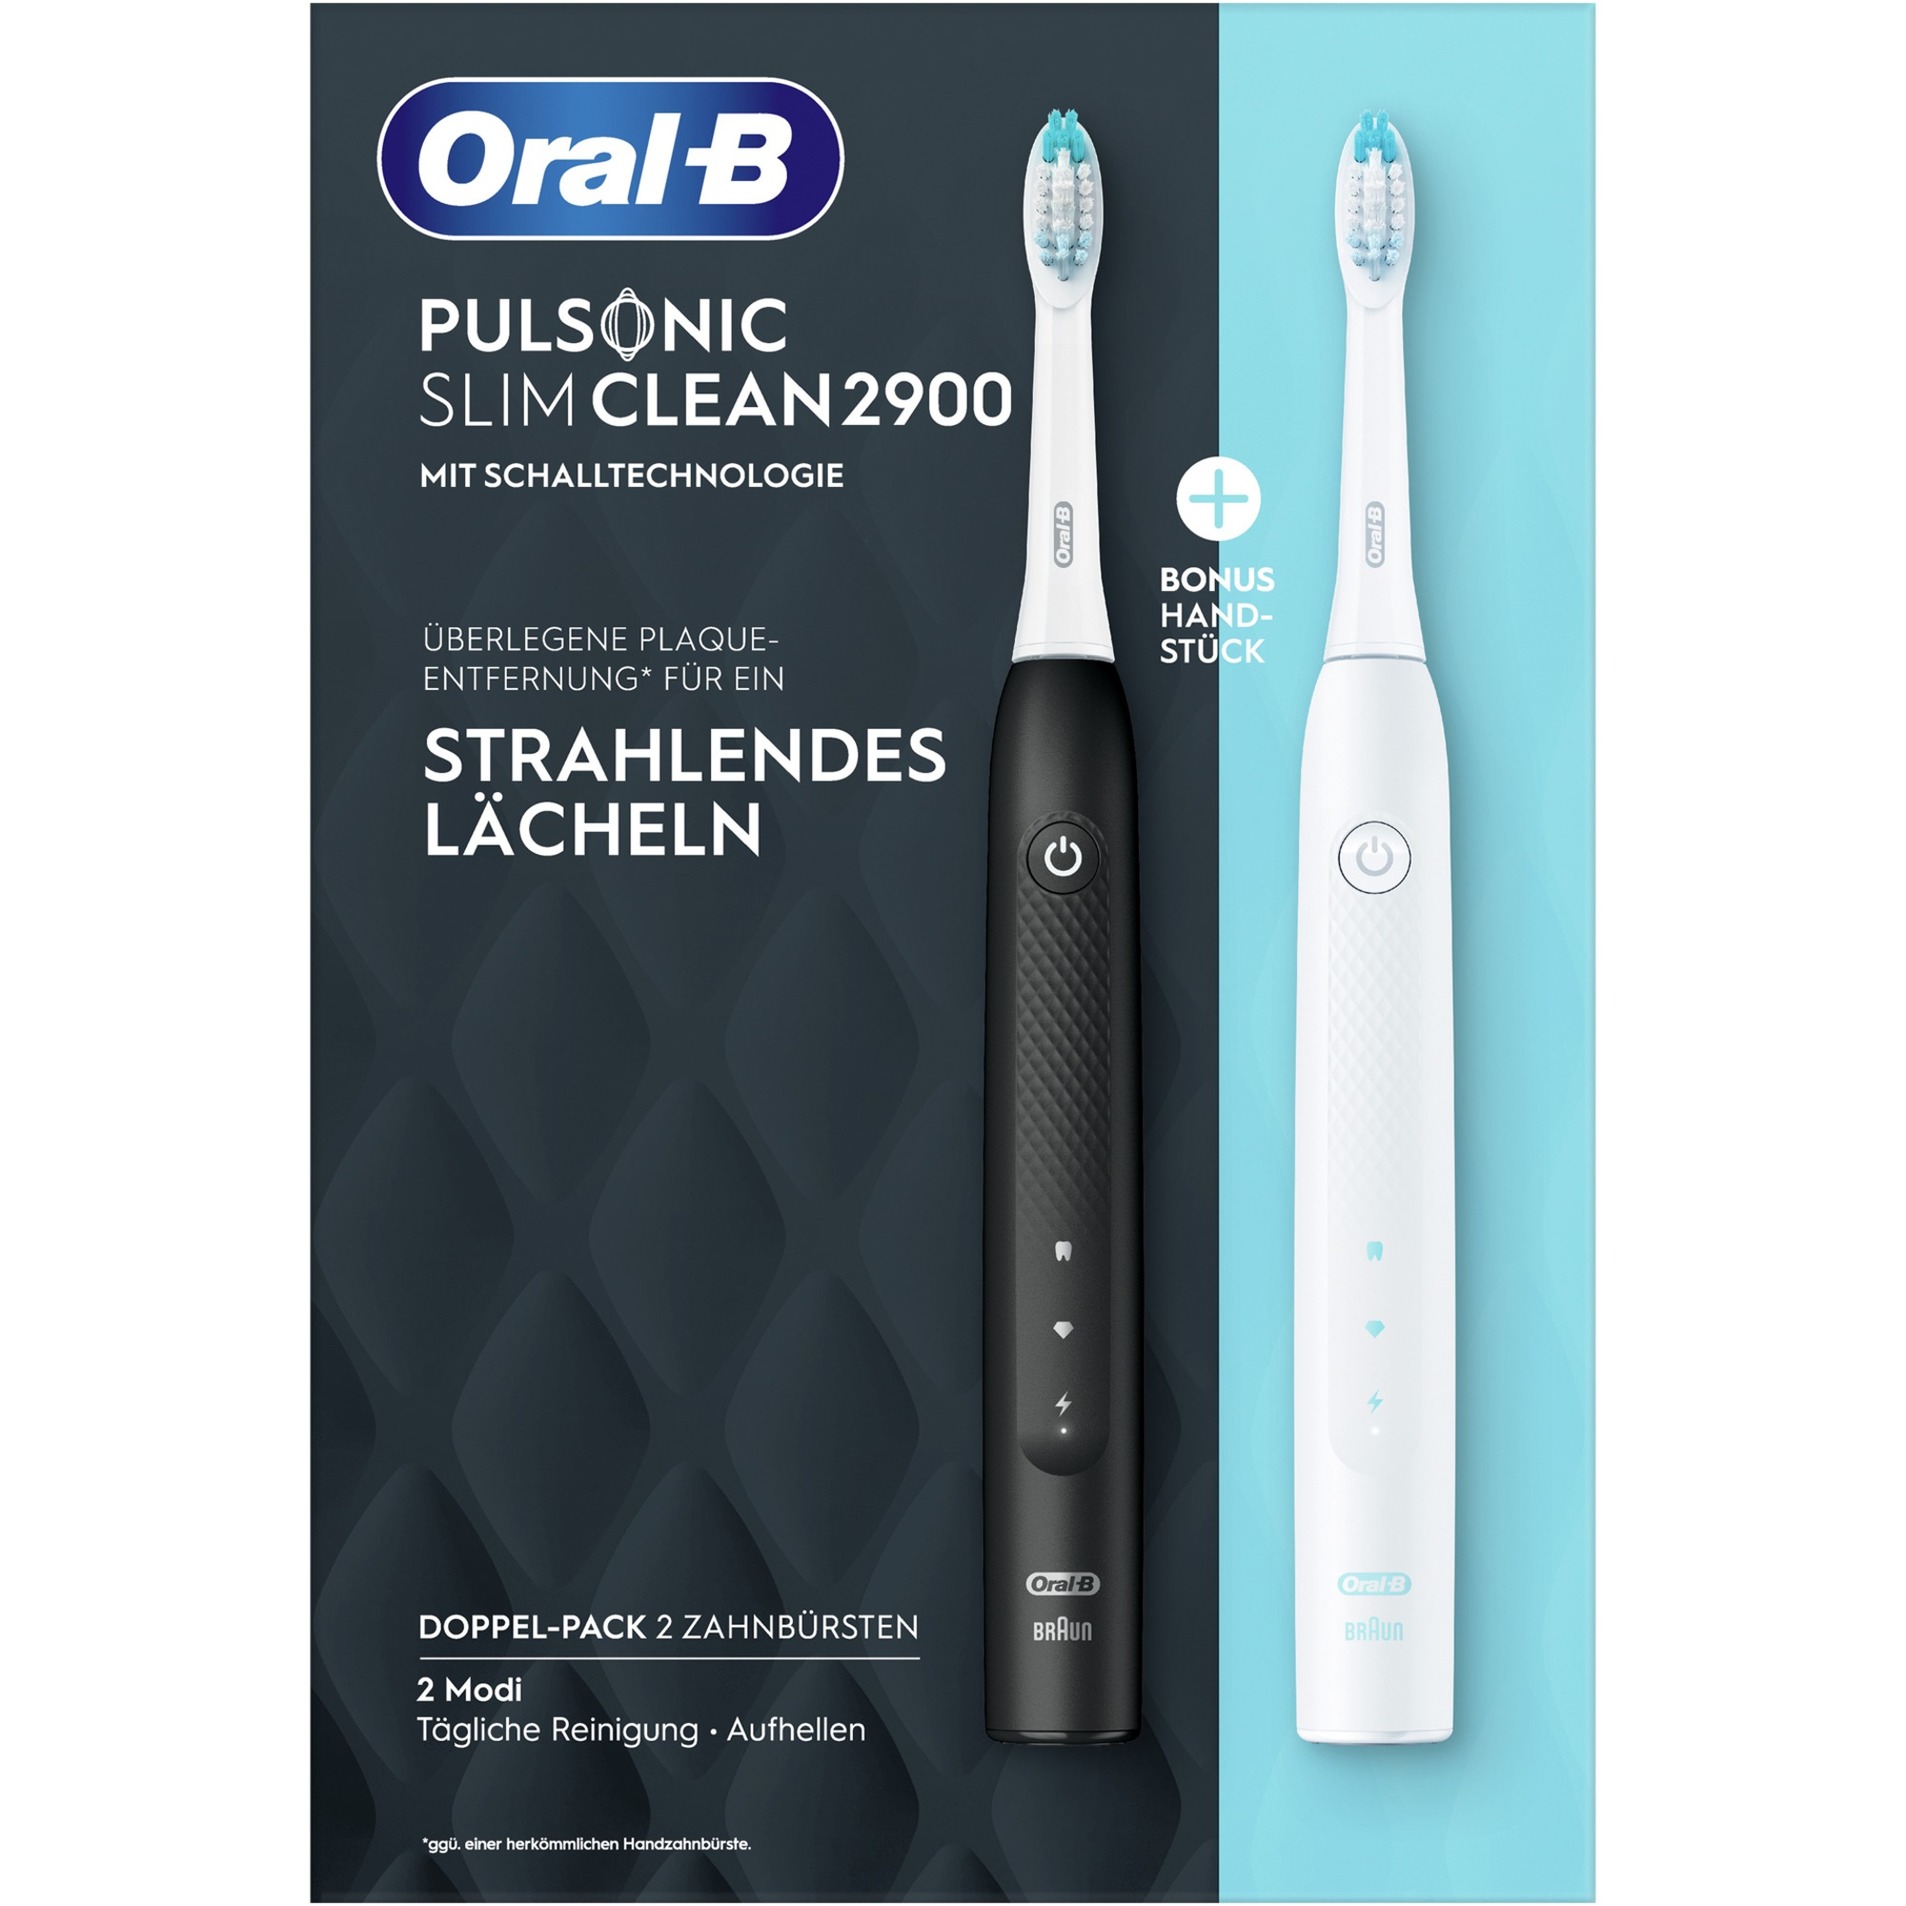 Image of Alternate - Oral-B Pulsonic Slim Clean 2900, Elektrische Zahnbürste online einkaufen bei Alternate